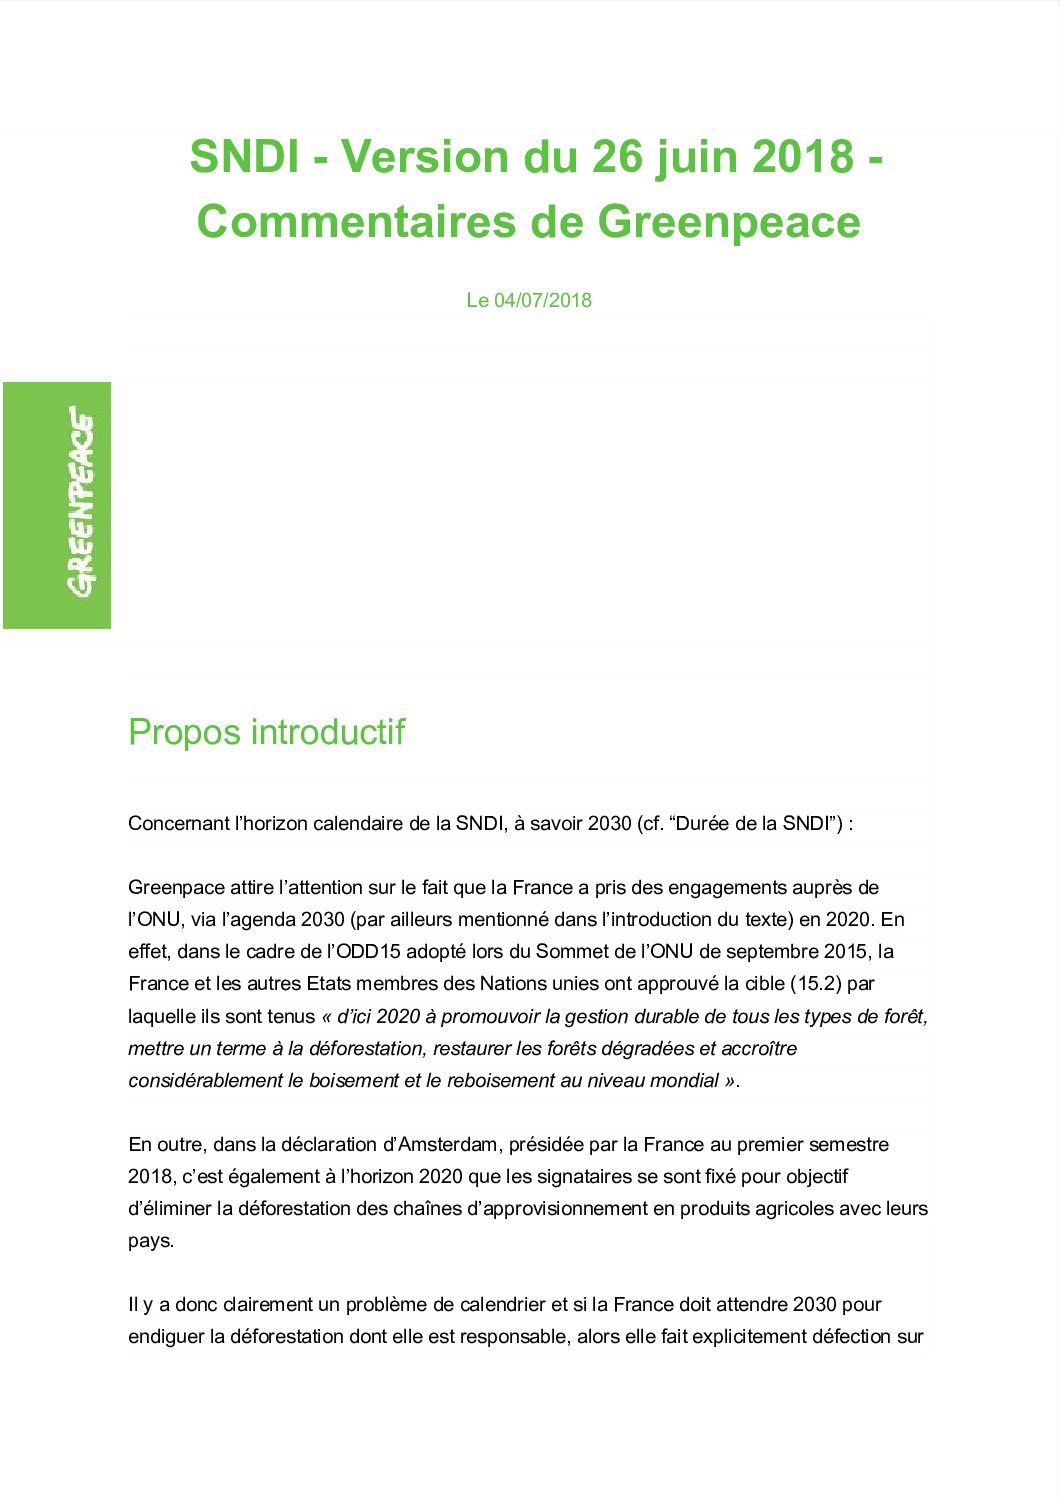 SNDI provisoire — Commentaires de Greenpeace